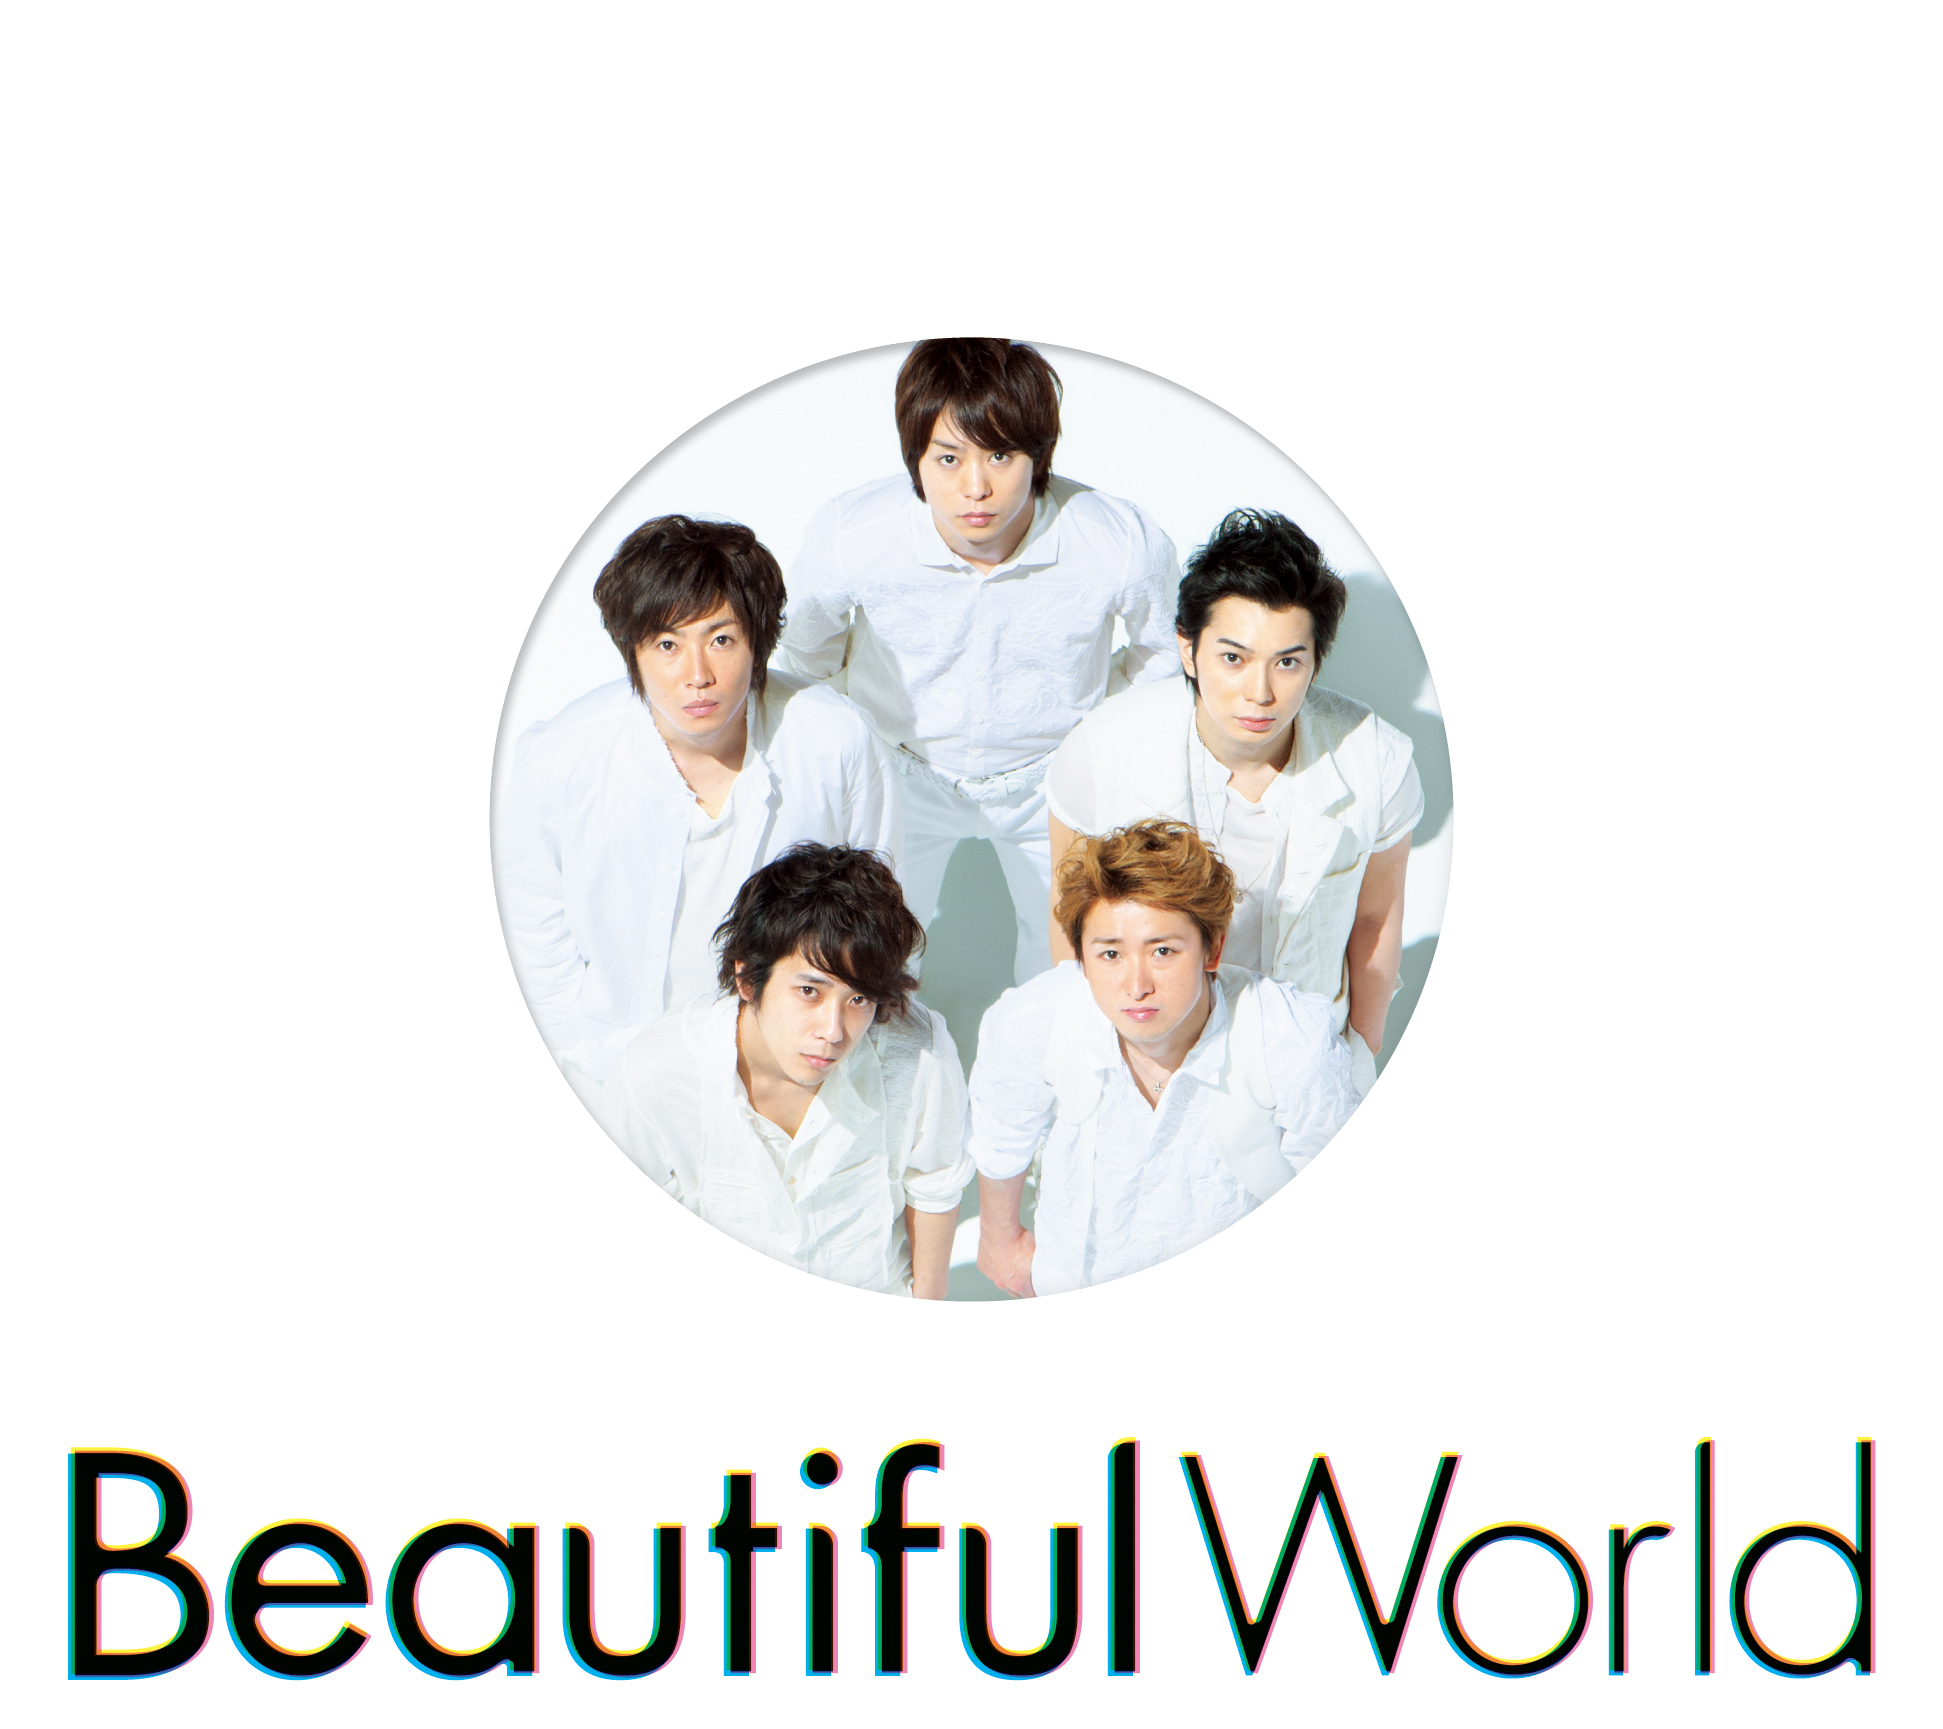 嵐 (あらし) 10thアルバム『Beautiful World (ビューティフル・ワールド)』(通常盤 初回プレス) 高画質CDジャケット画像 ジャケ写